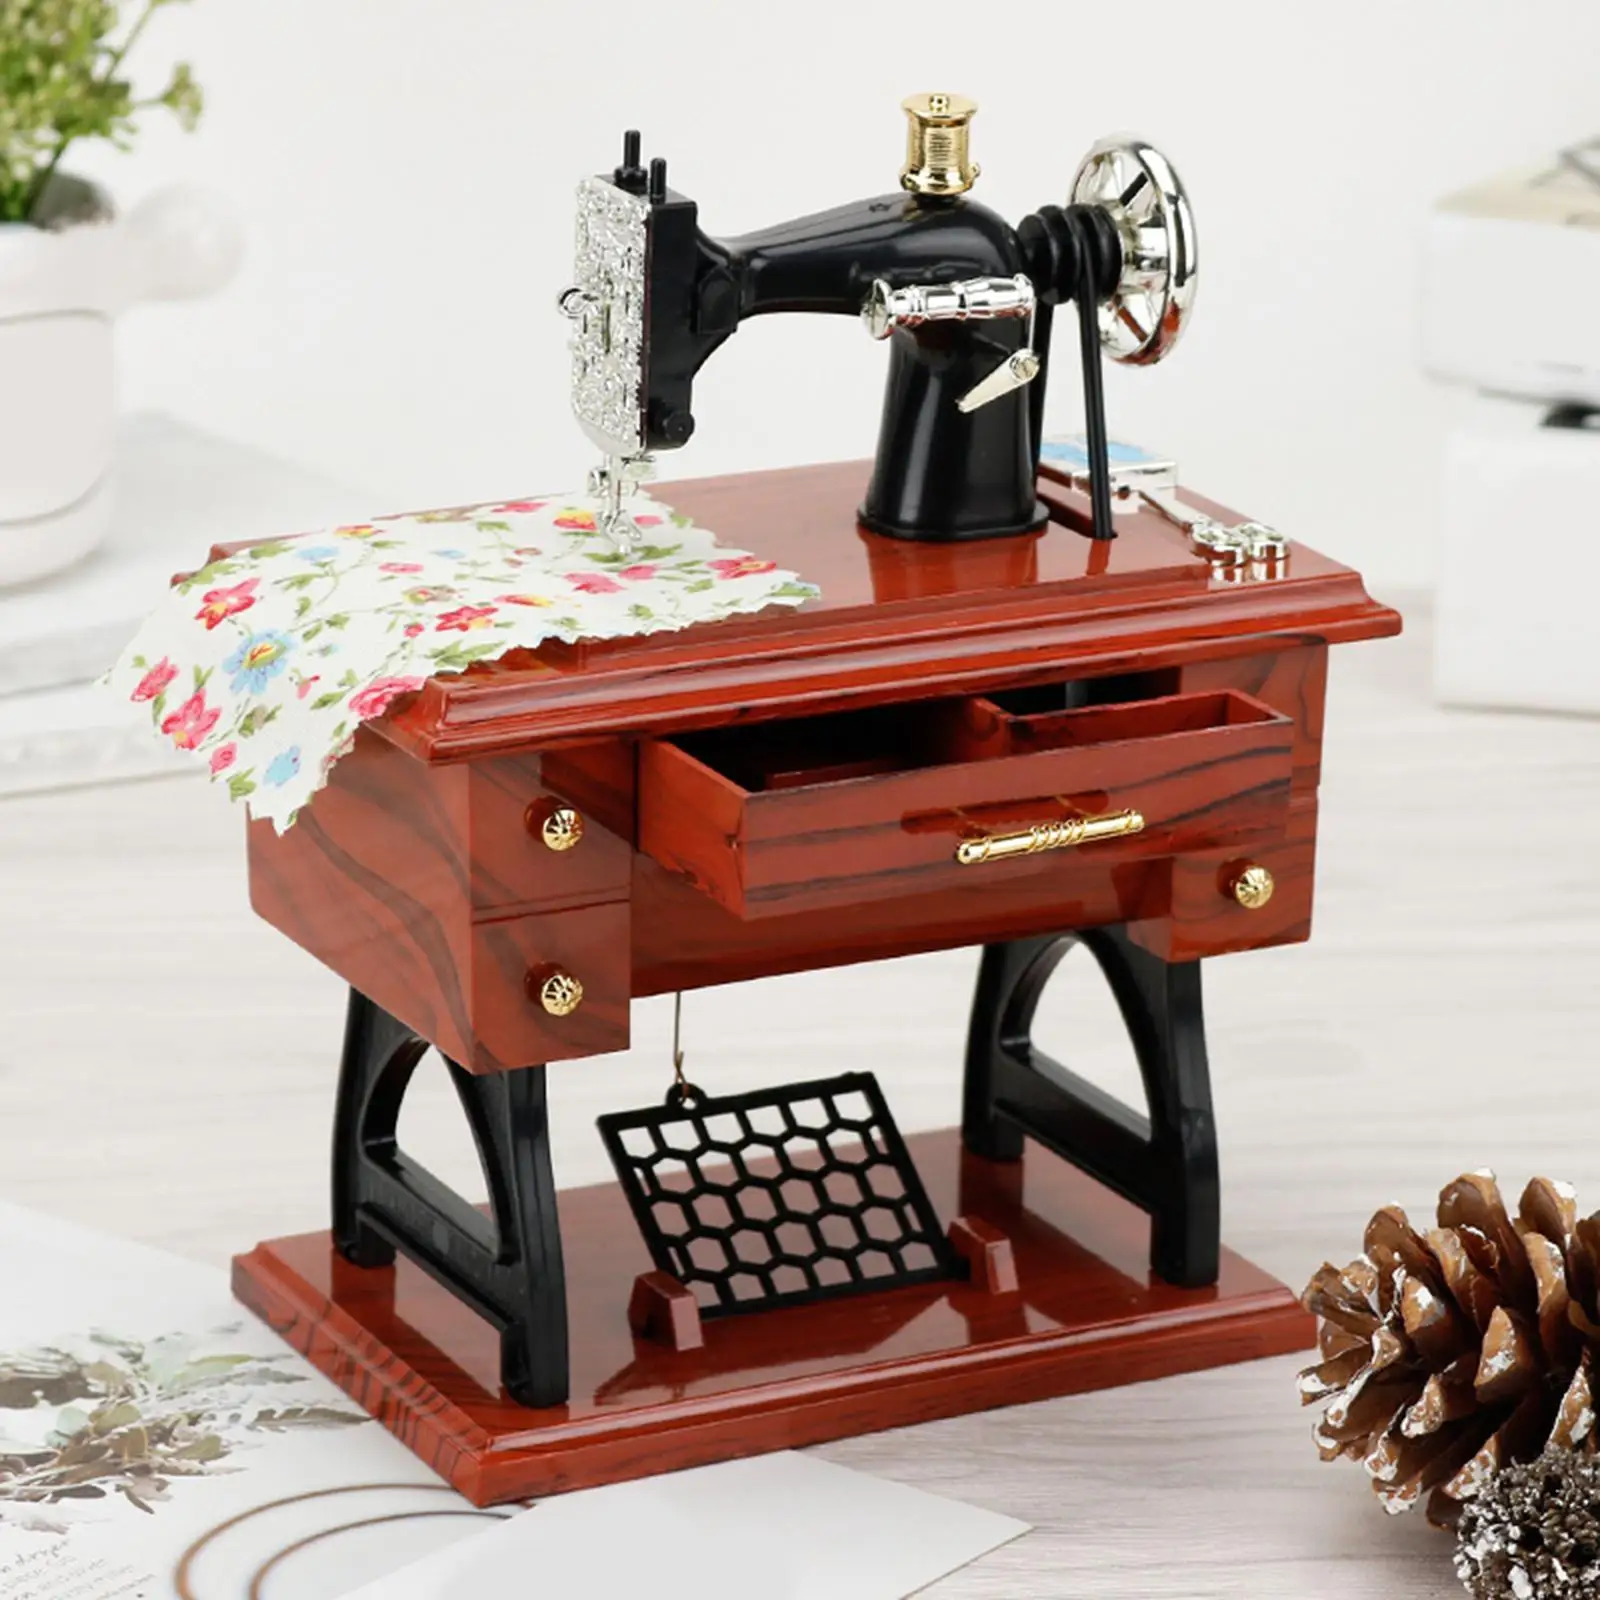 Mini Sewing Machine Music Box Mechanical Music up for Birthday Gift